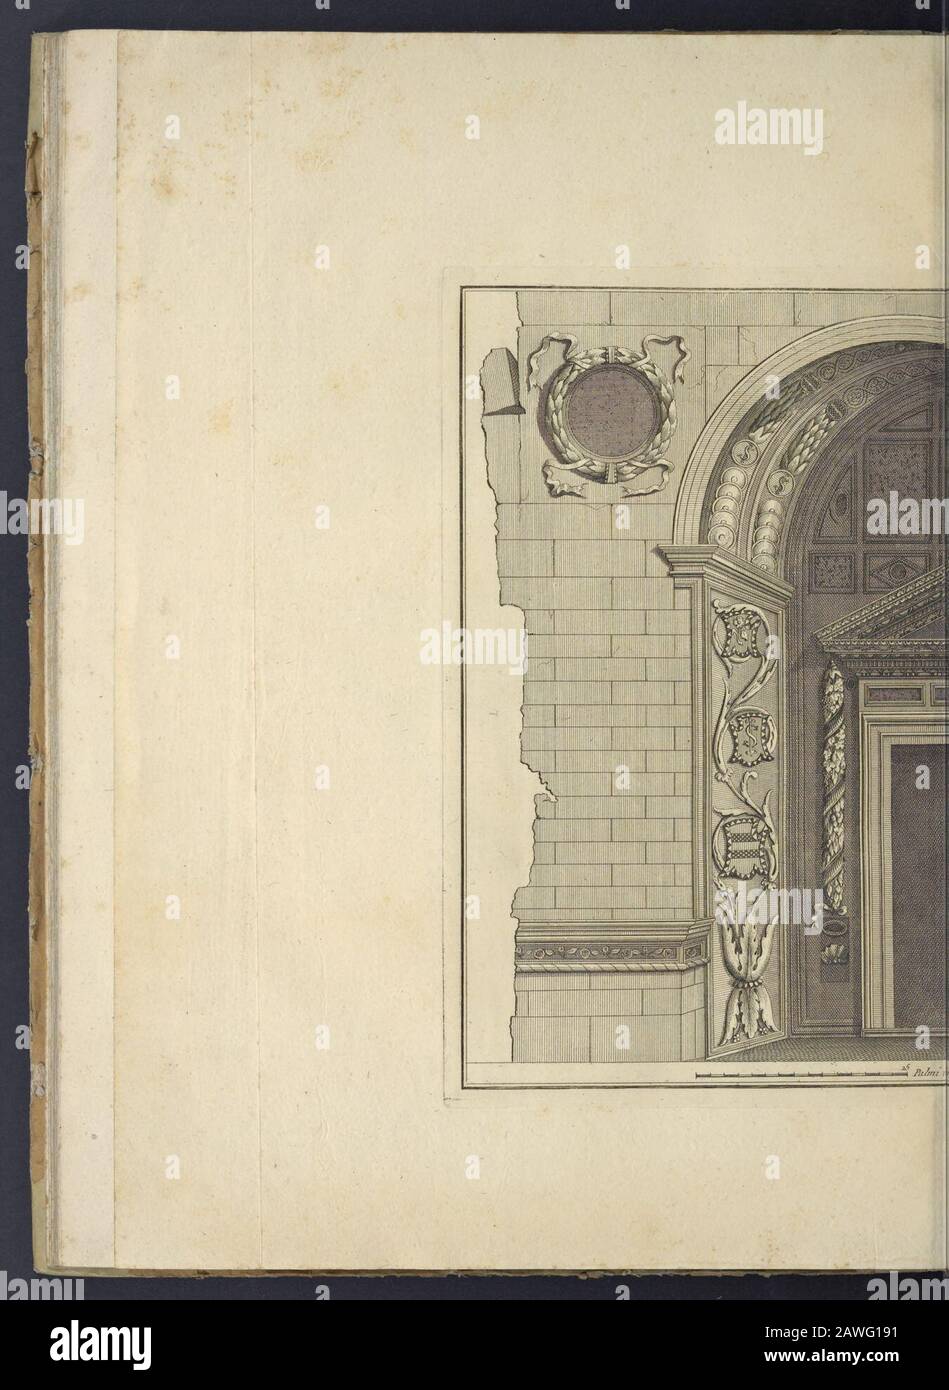 Le Temple de malateste de Rimini : architecture de Leon Baptiste Alberti de Florence . Stock Photo